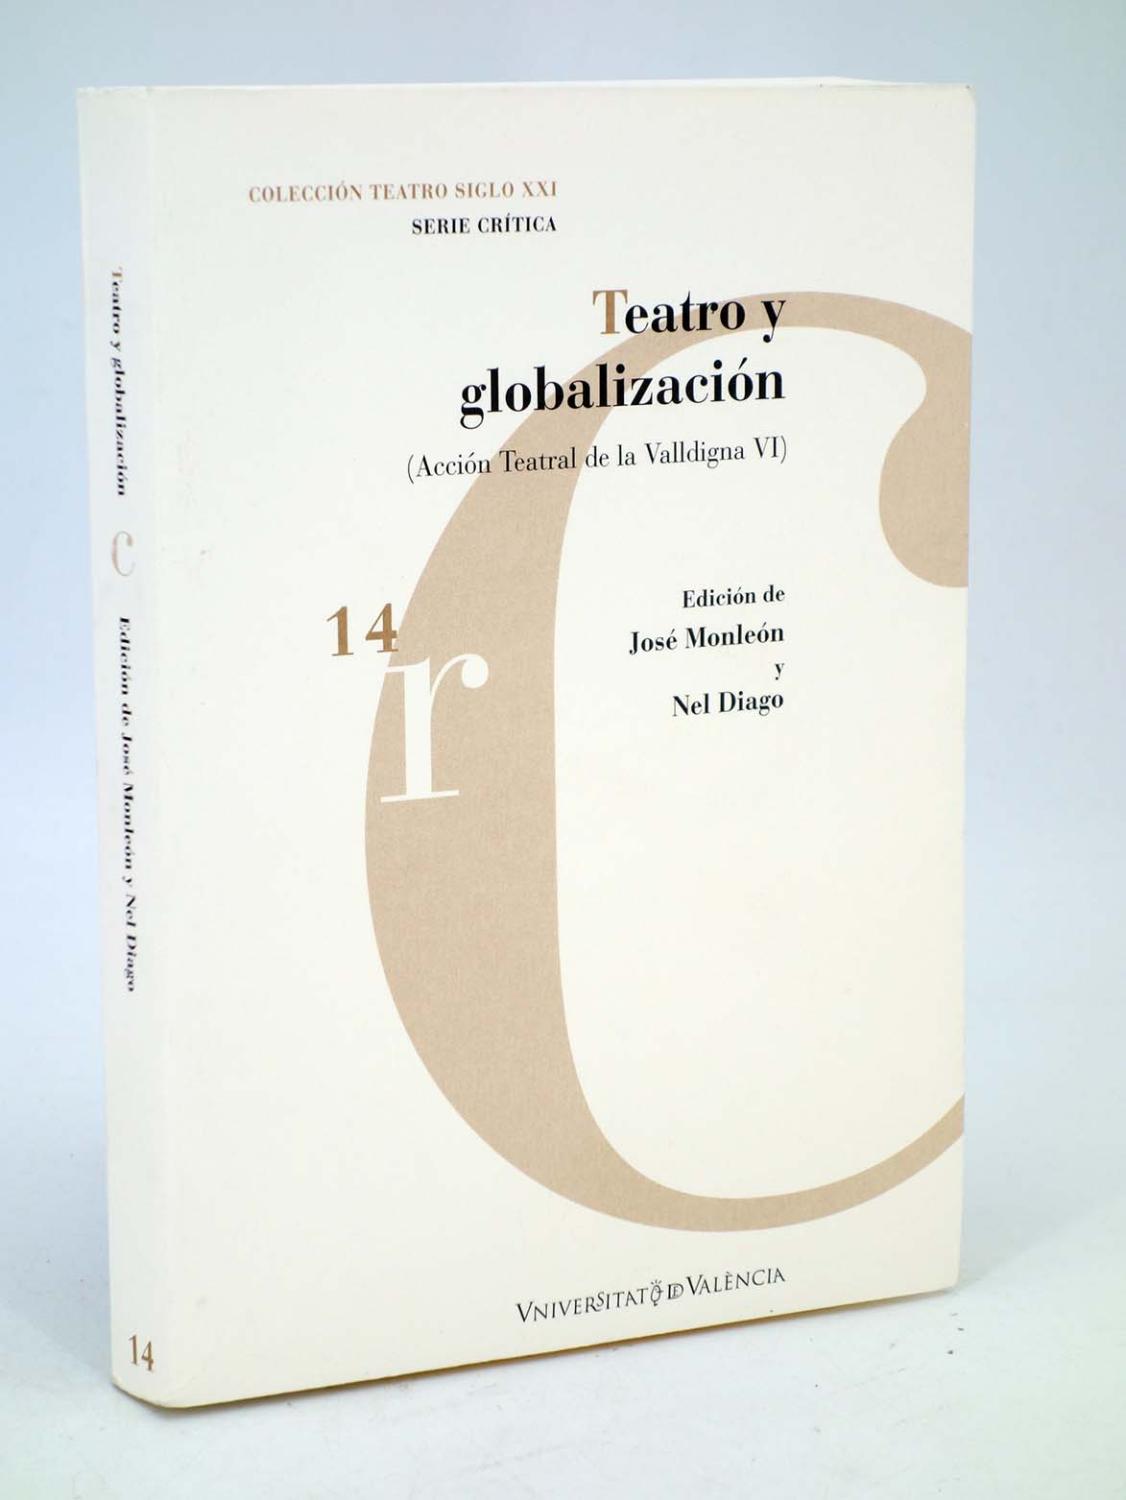 TEATRO Y GLOBALIZACIÓN. ACCCIÓN TEATRAL DE LA VALLDIGNA VI (José Monleón / Nel Diago) 2007 - José Monleón / Nel Diago